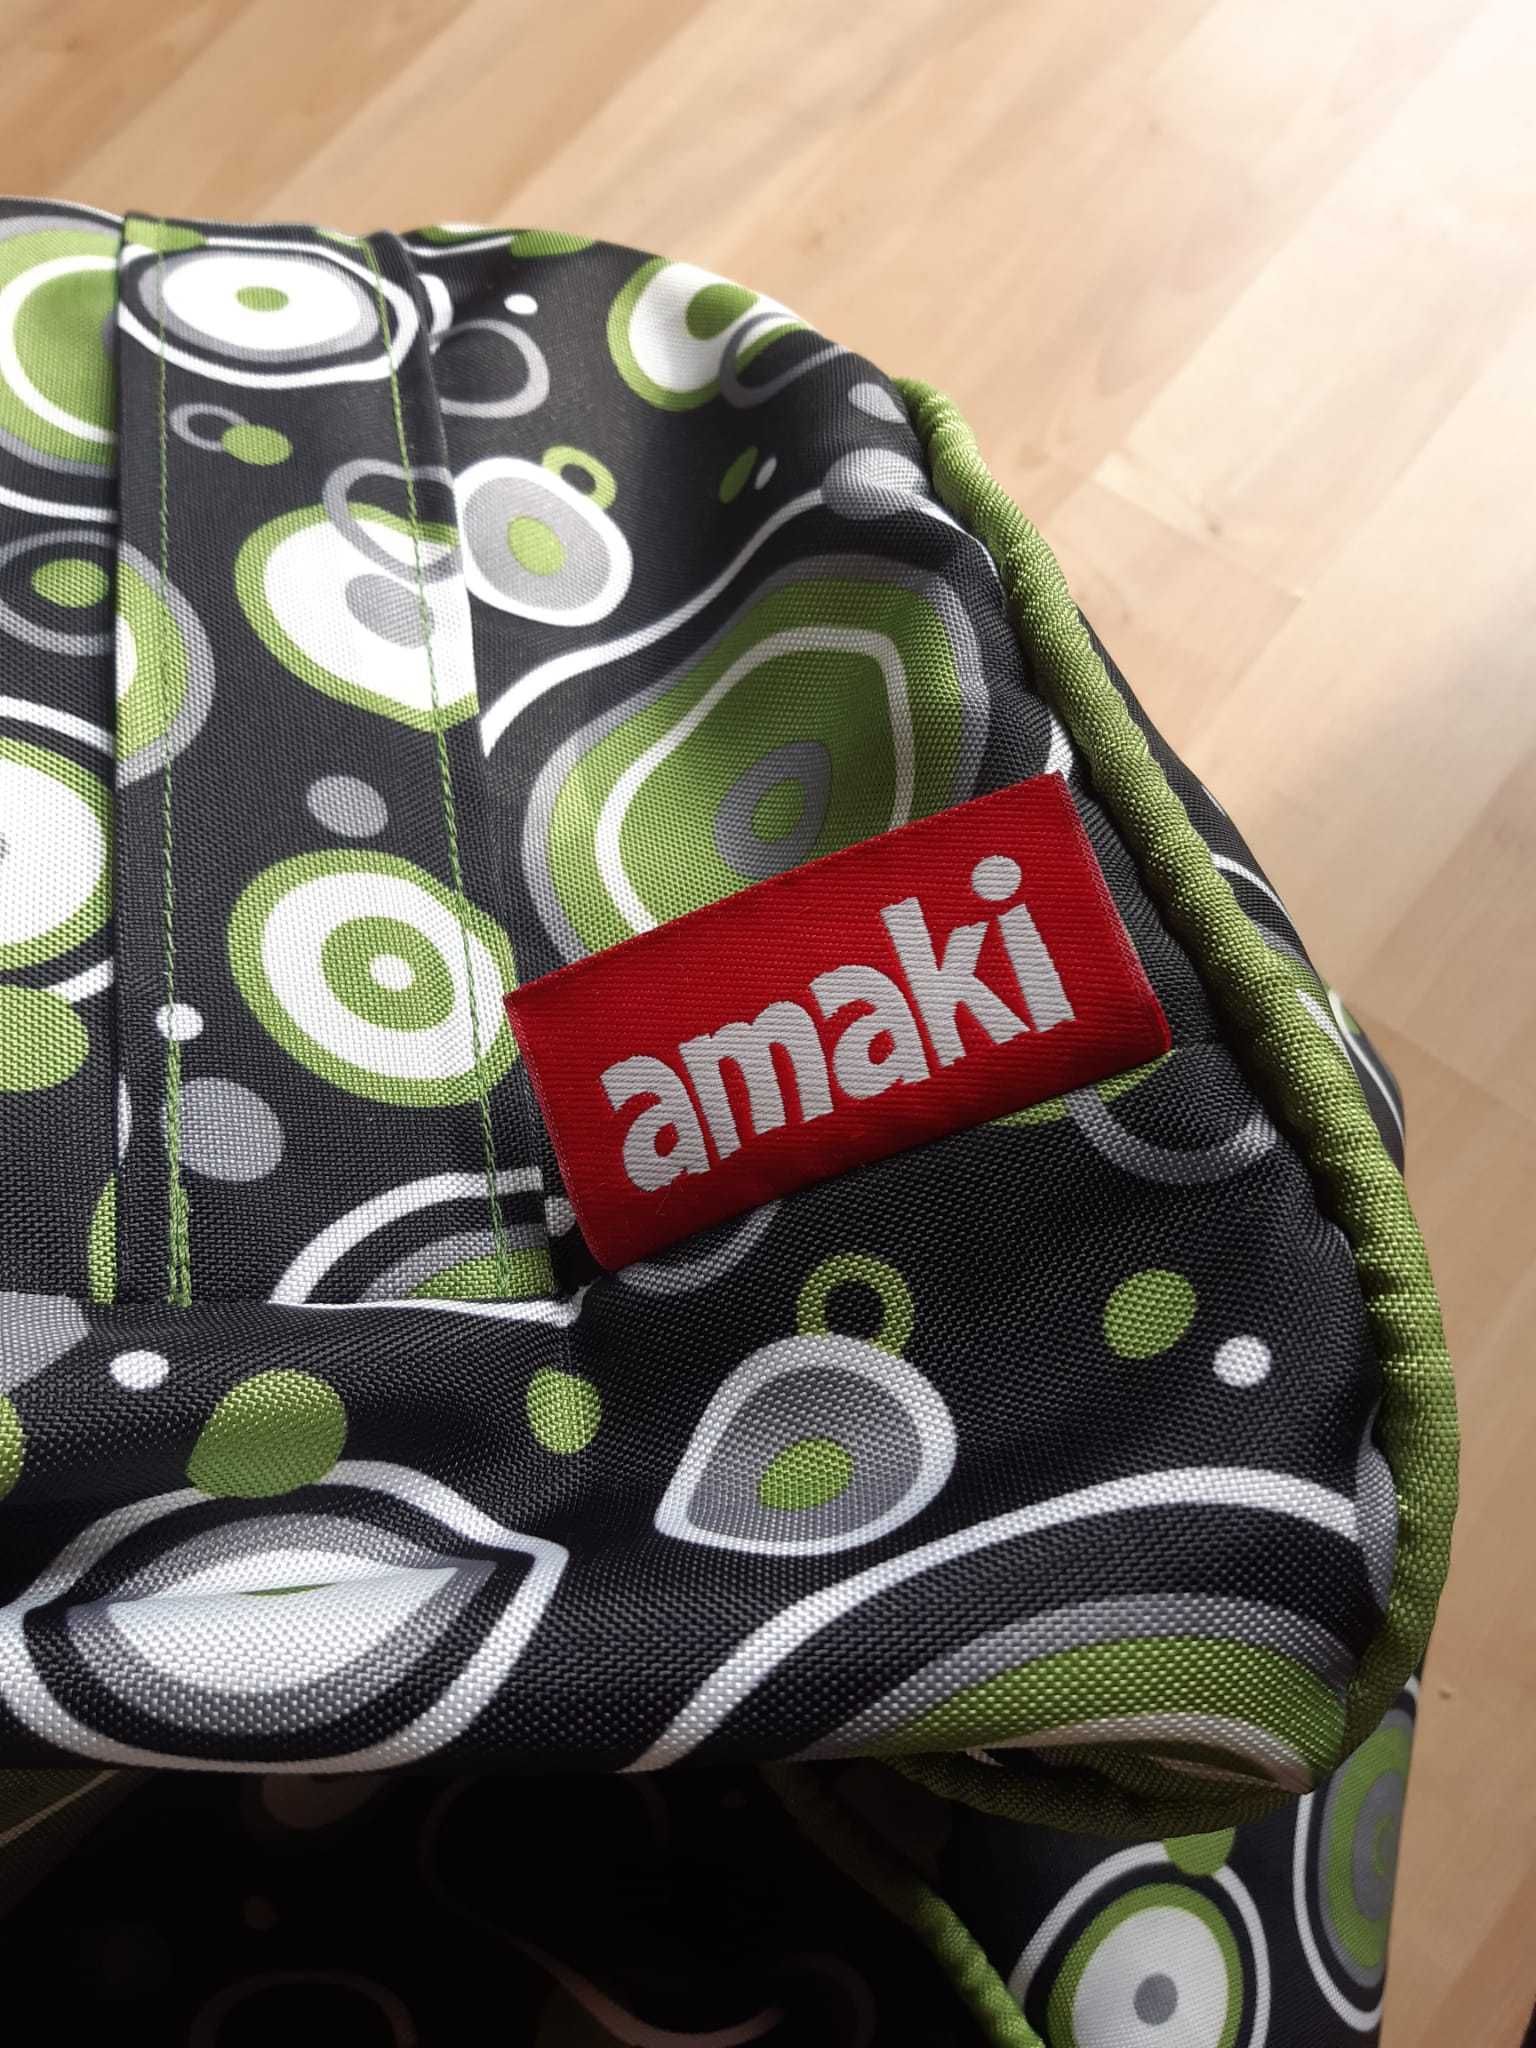 Super wygodna pufa z podpórką na nogi firmy Amaki